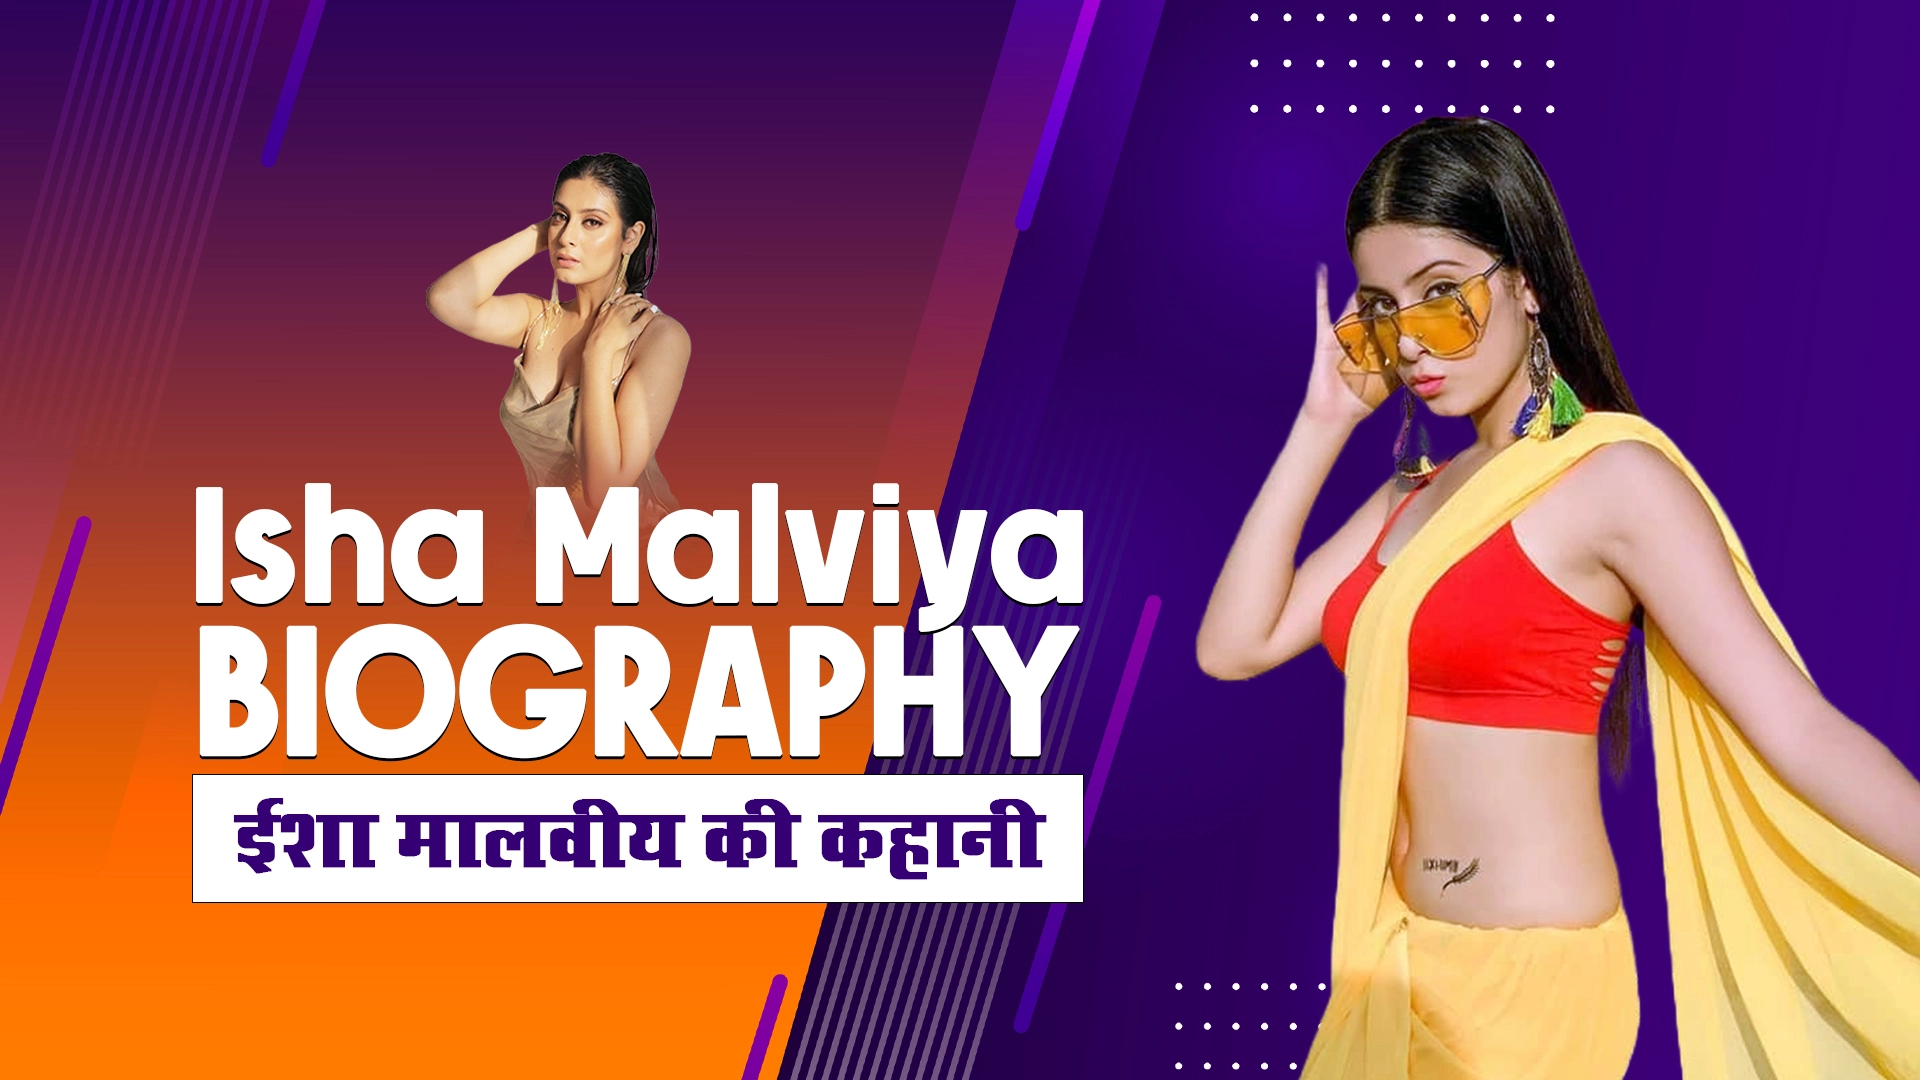 ईशा मालवीय एक मॉडल, एक्ट्रेस और फैशन इन्फ्लुएंसर हैं, जानिये नेट वर्थ, Isha Malviya Biography in Hindi